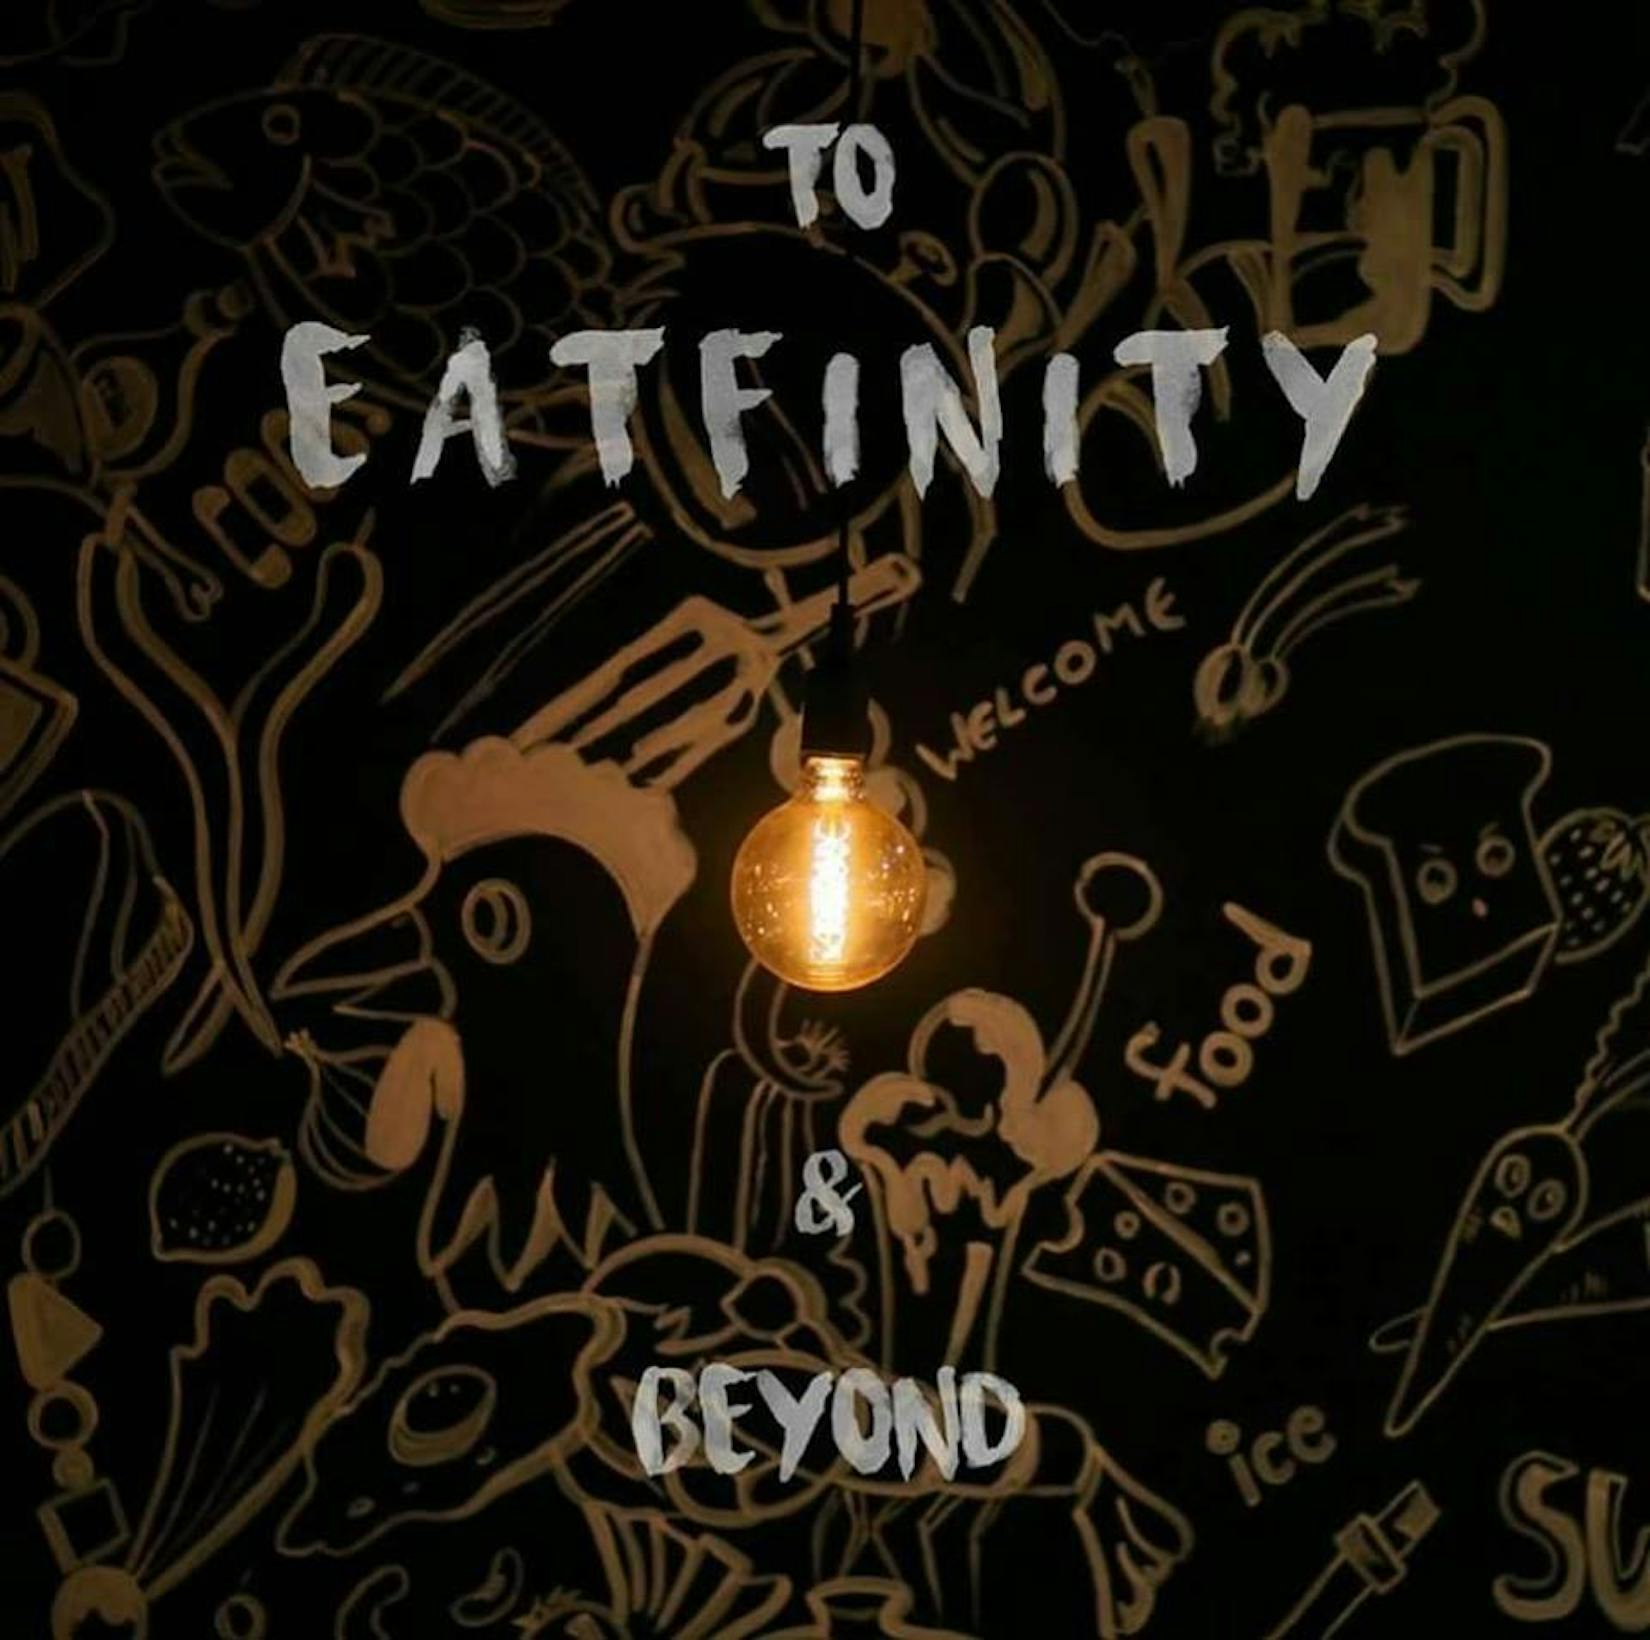 Eatfinity Restaurant | yathar